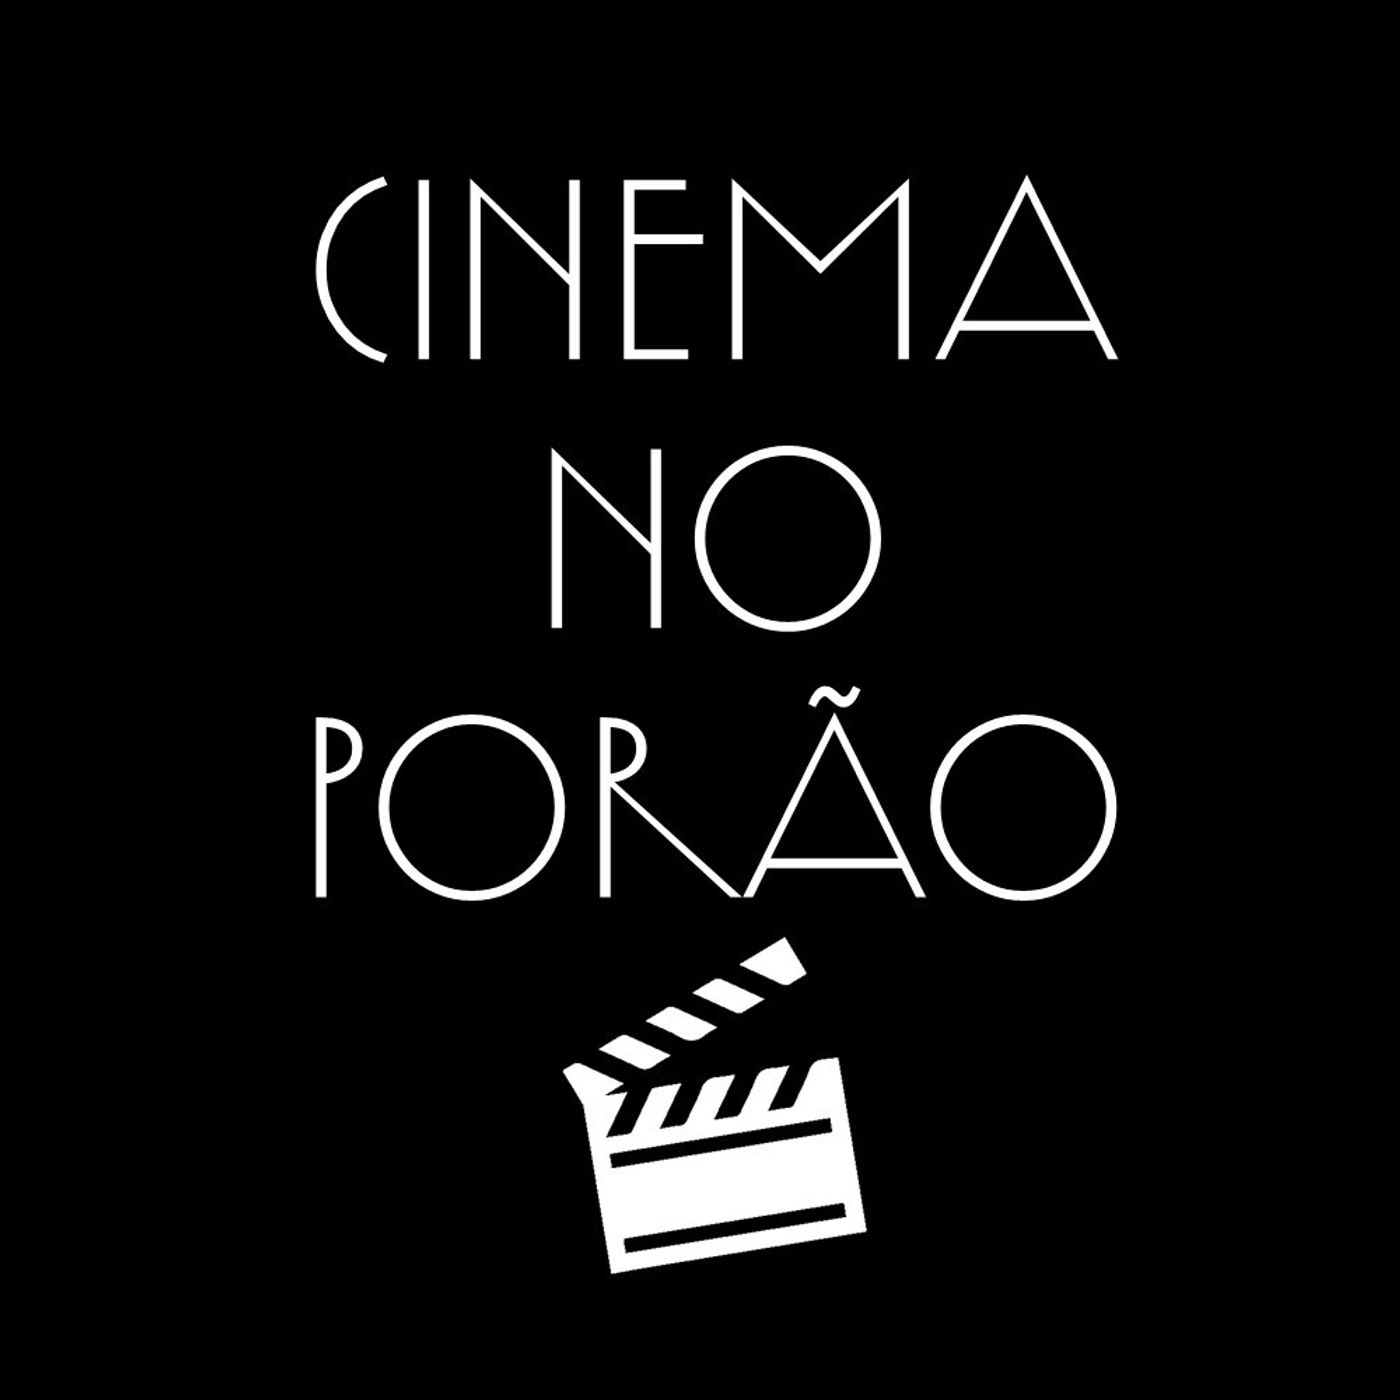 CINEMA NO PORÃO